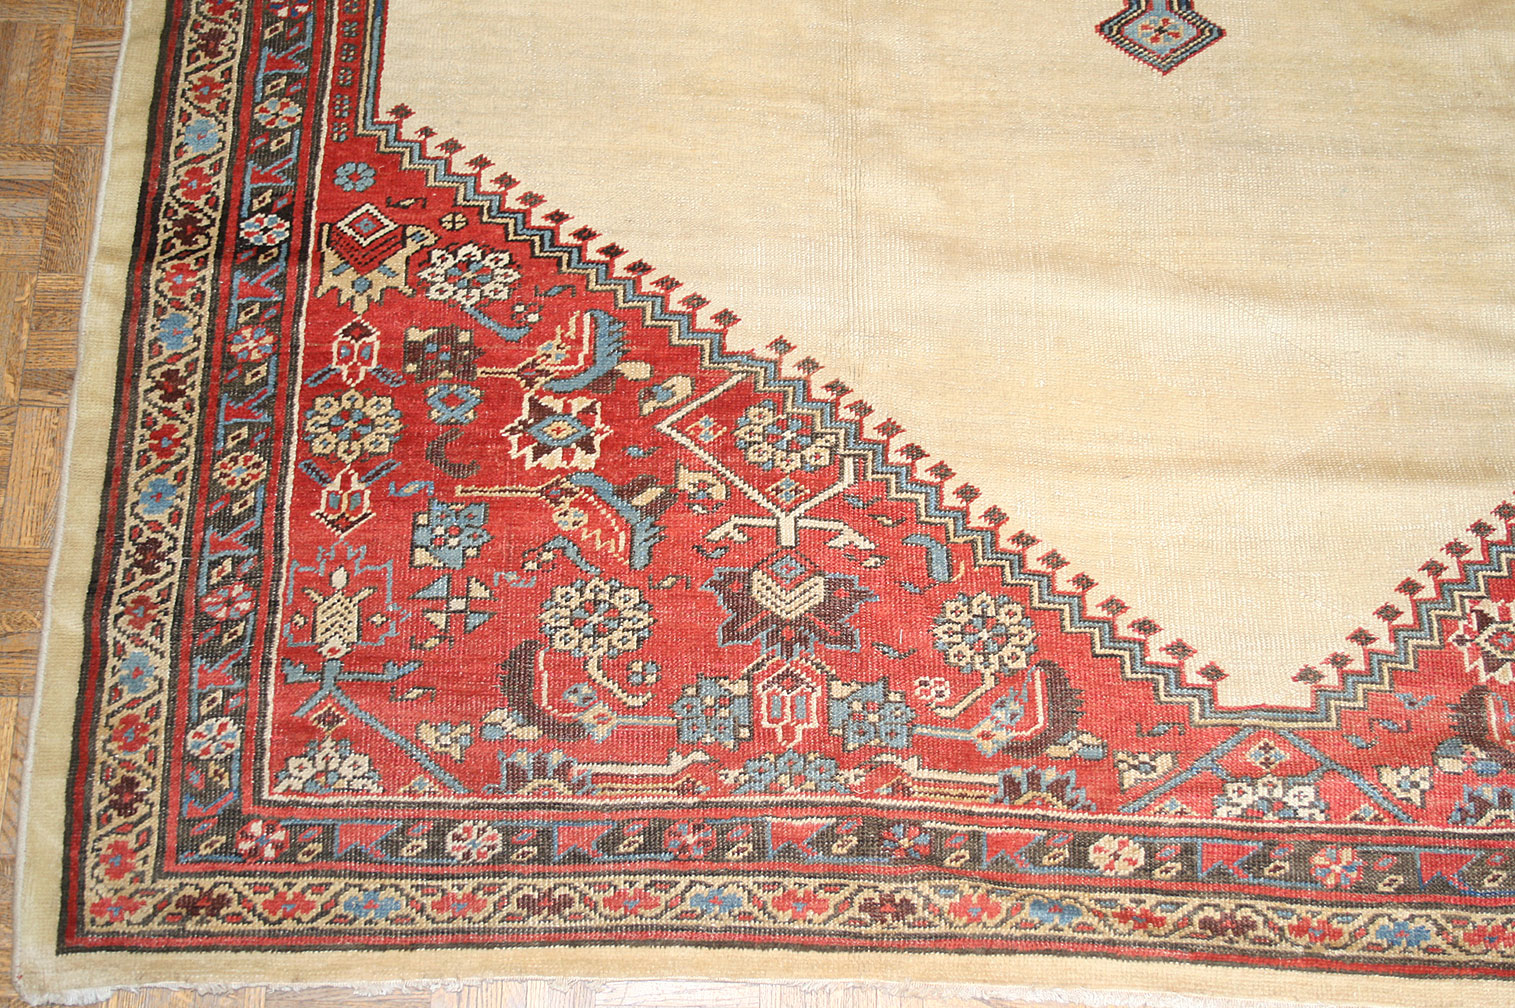 Antique bakshaish Carpet - # 9652